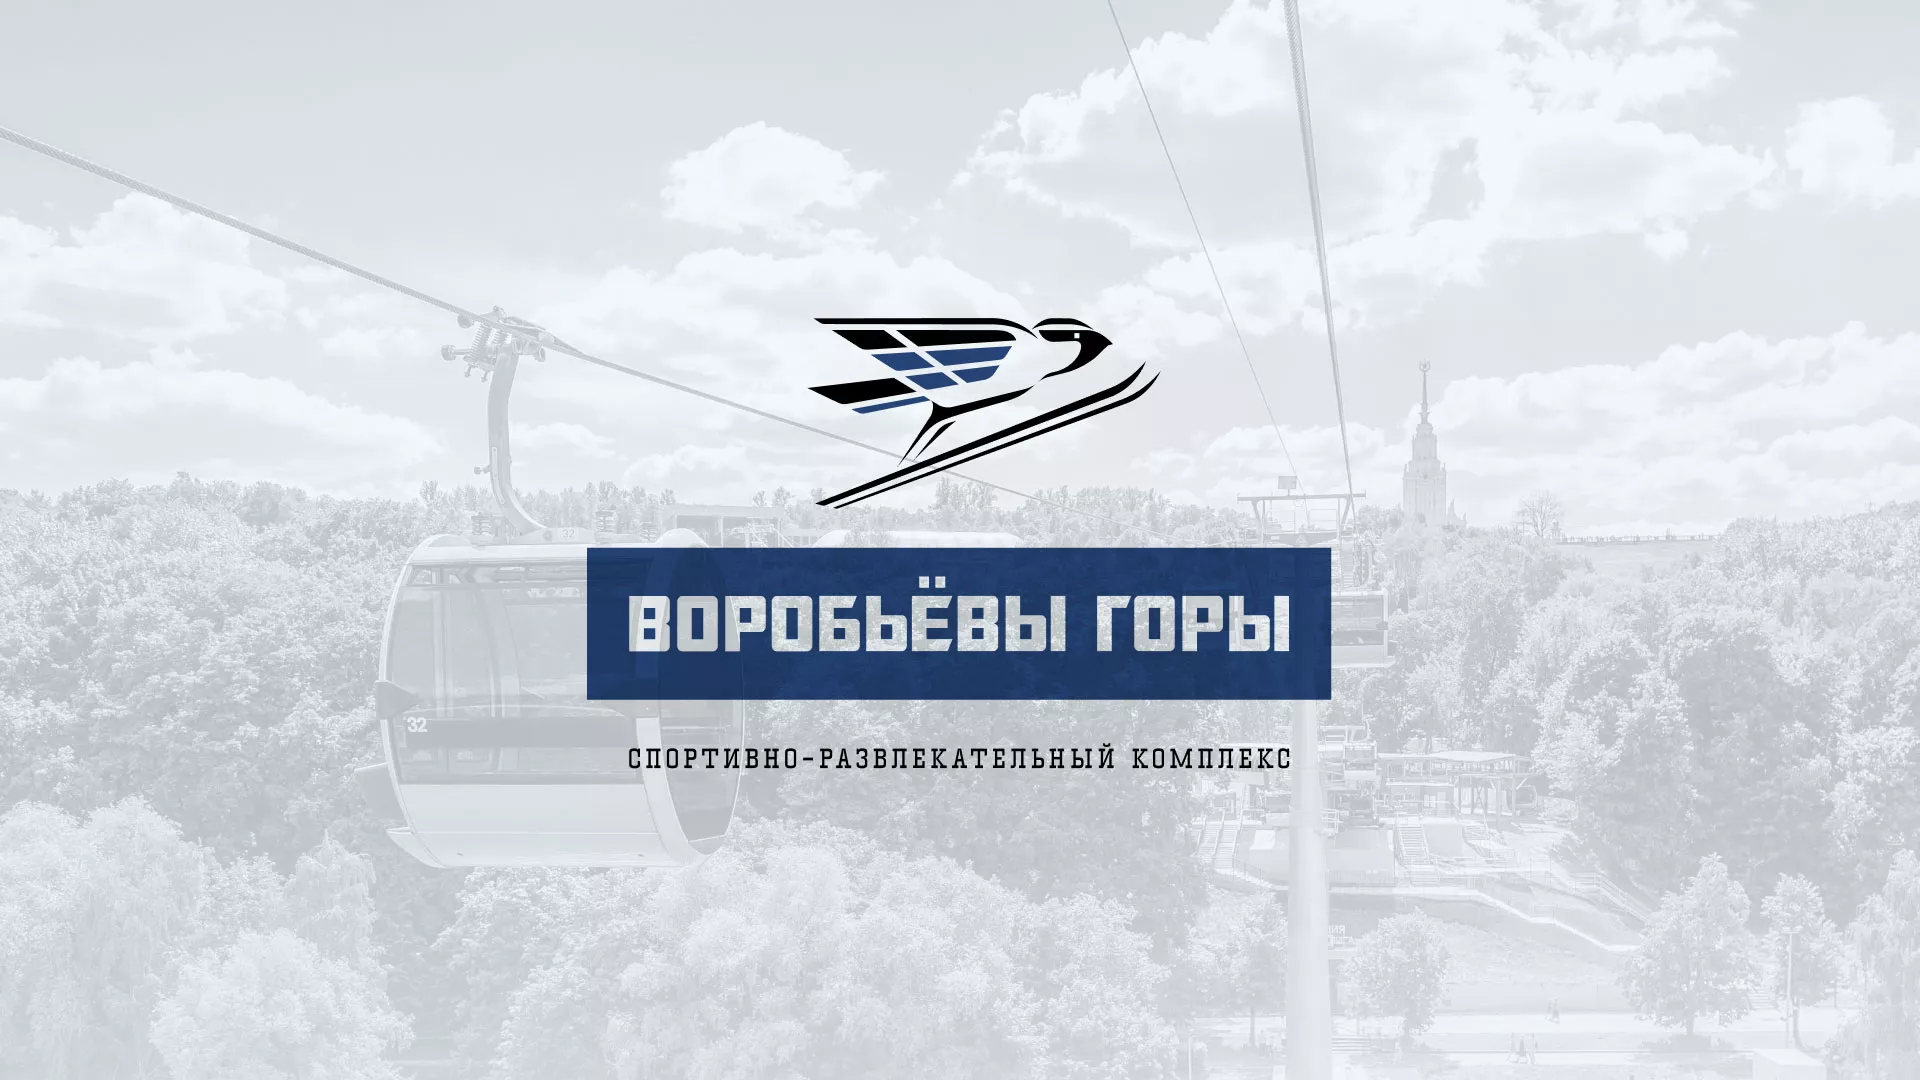 Разработка сайта в Рузаевке для спортивно-развлекательного комплекса «Воробьёвы горы»